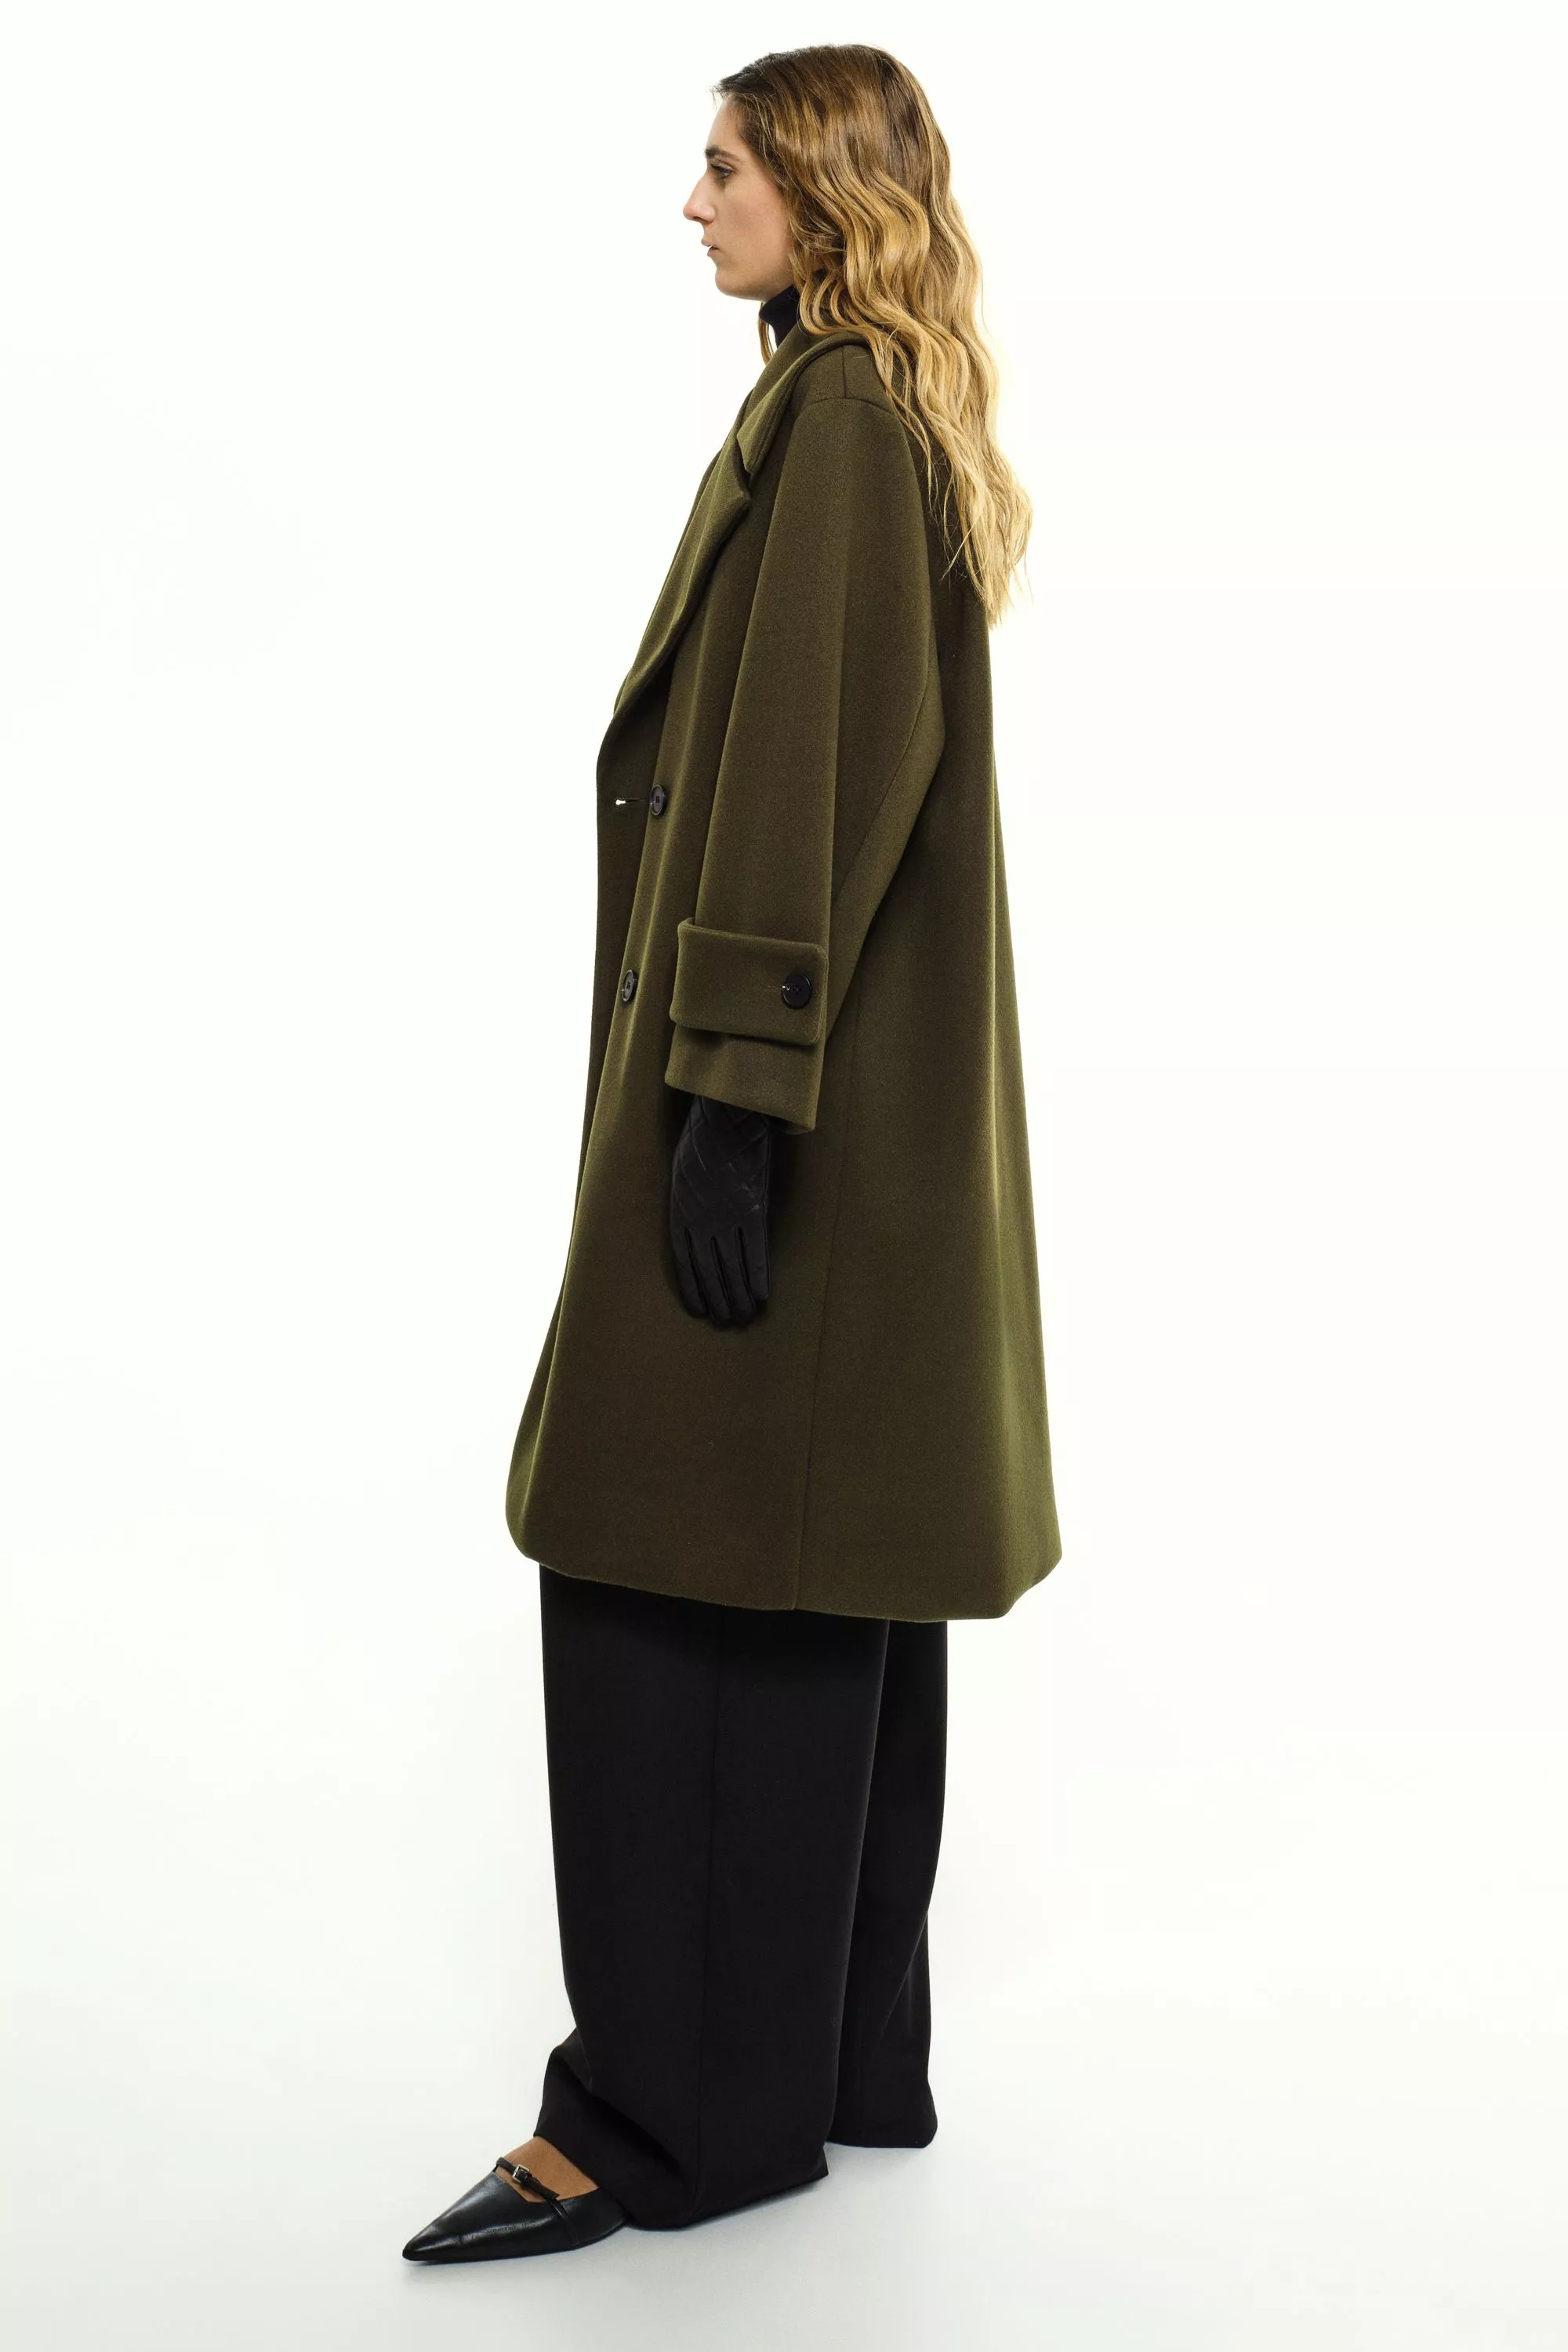 Damen Zweireihiger Mantel in Oliv von Ricano, Seitenansicht am Model